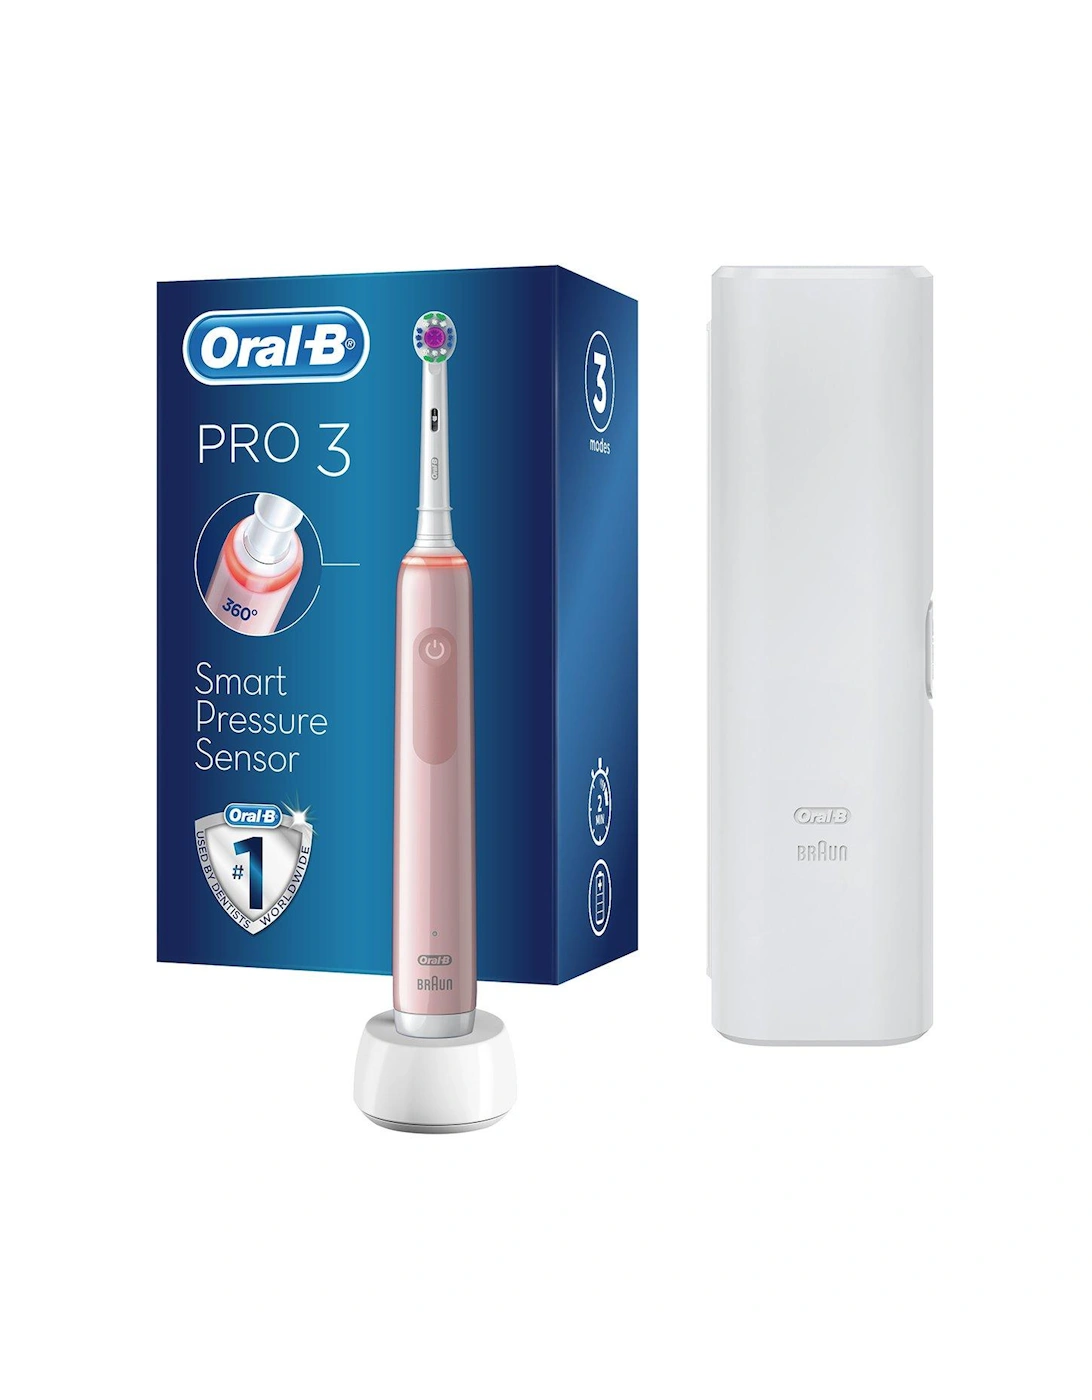 Oral-B Pro 3 - 3500 3DWhite - Pink Electric Toothbrush Designed By Braun + Bonus Travel Case, 2 of 1